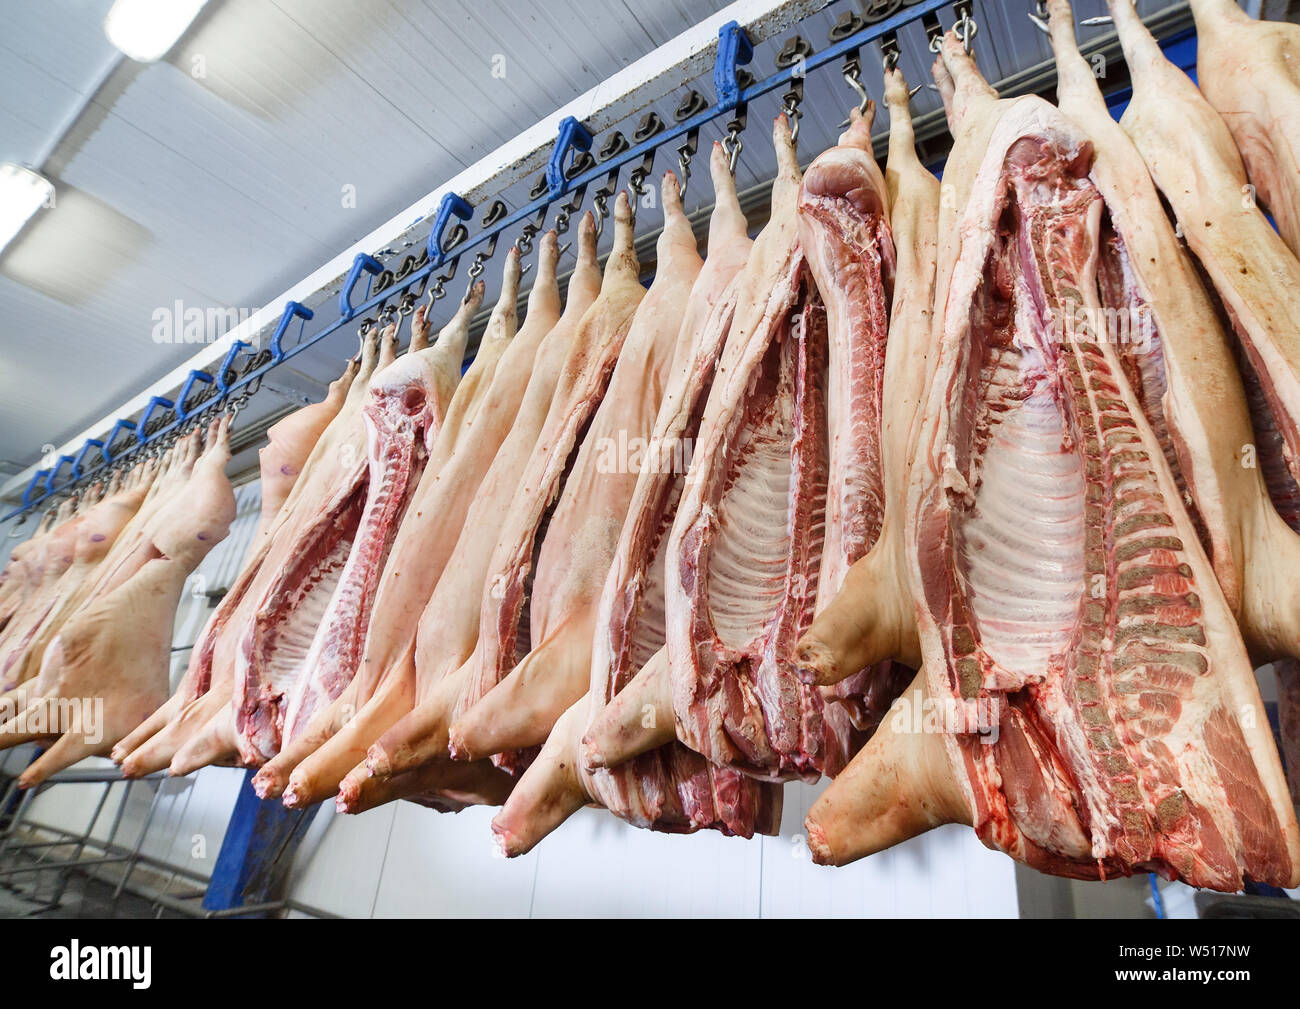 Geschlachtete Schweine in der Hälfte im Kühlschrank Zimmer der  Nahrungsmittelindustrie Werk gelagert Stockfotografie - Alamy